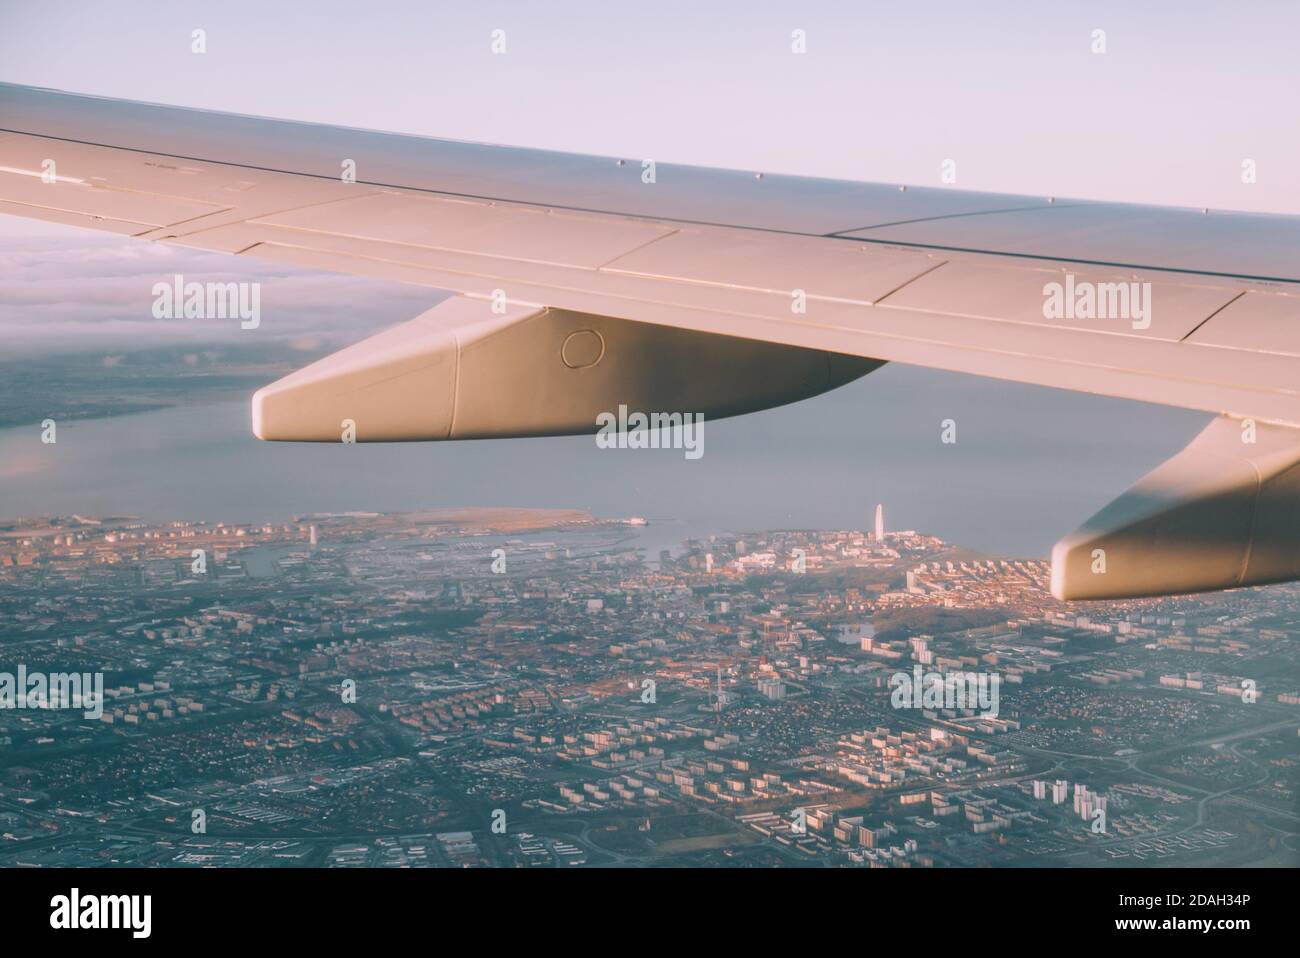 Interno aereo con finestra vista Mar Baltico e nuvole. Foto Stock